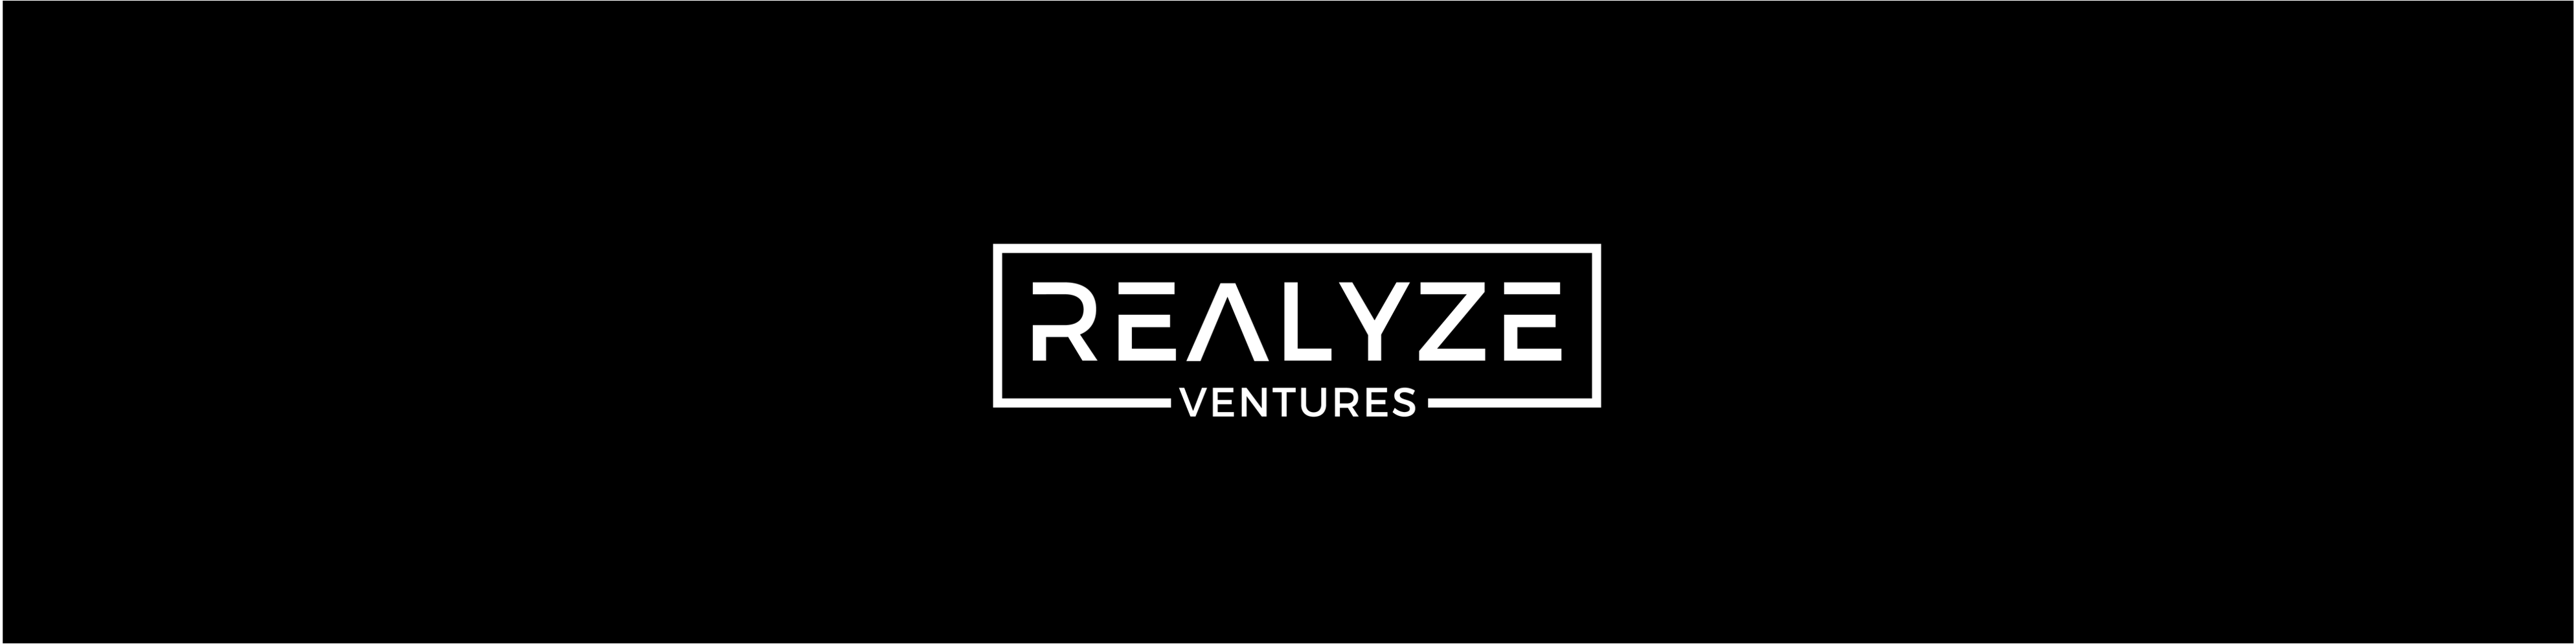 Realyze Ventures / investor von Köln / Background